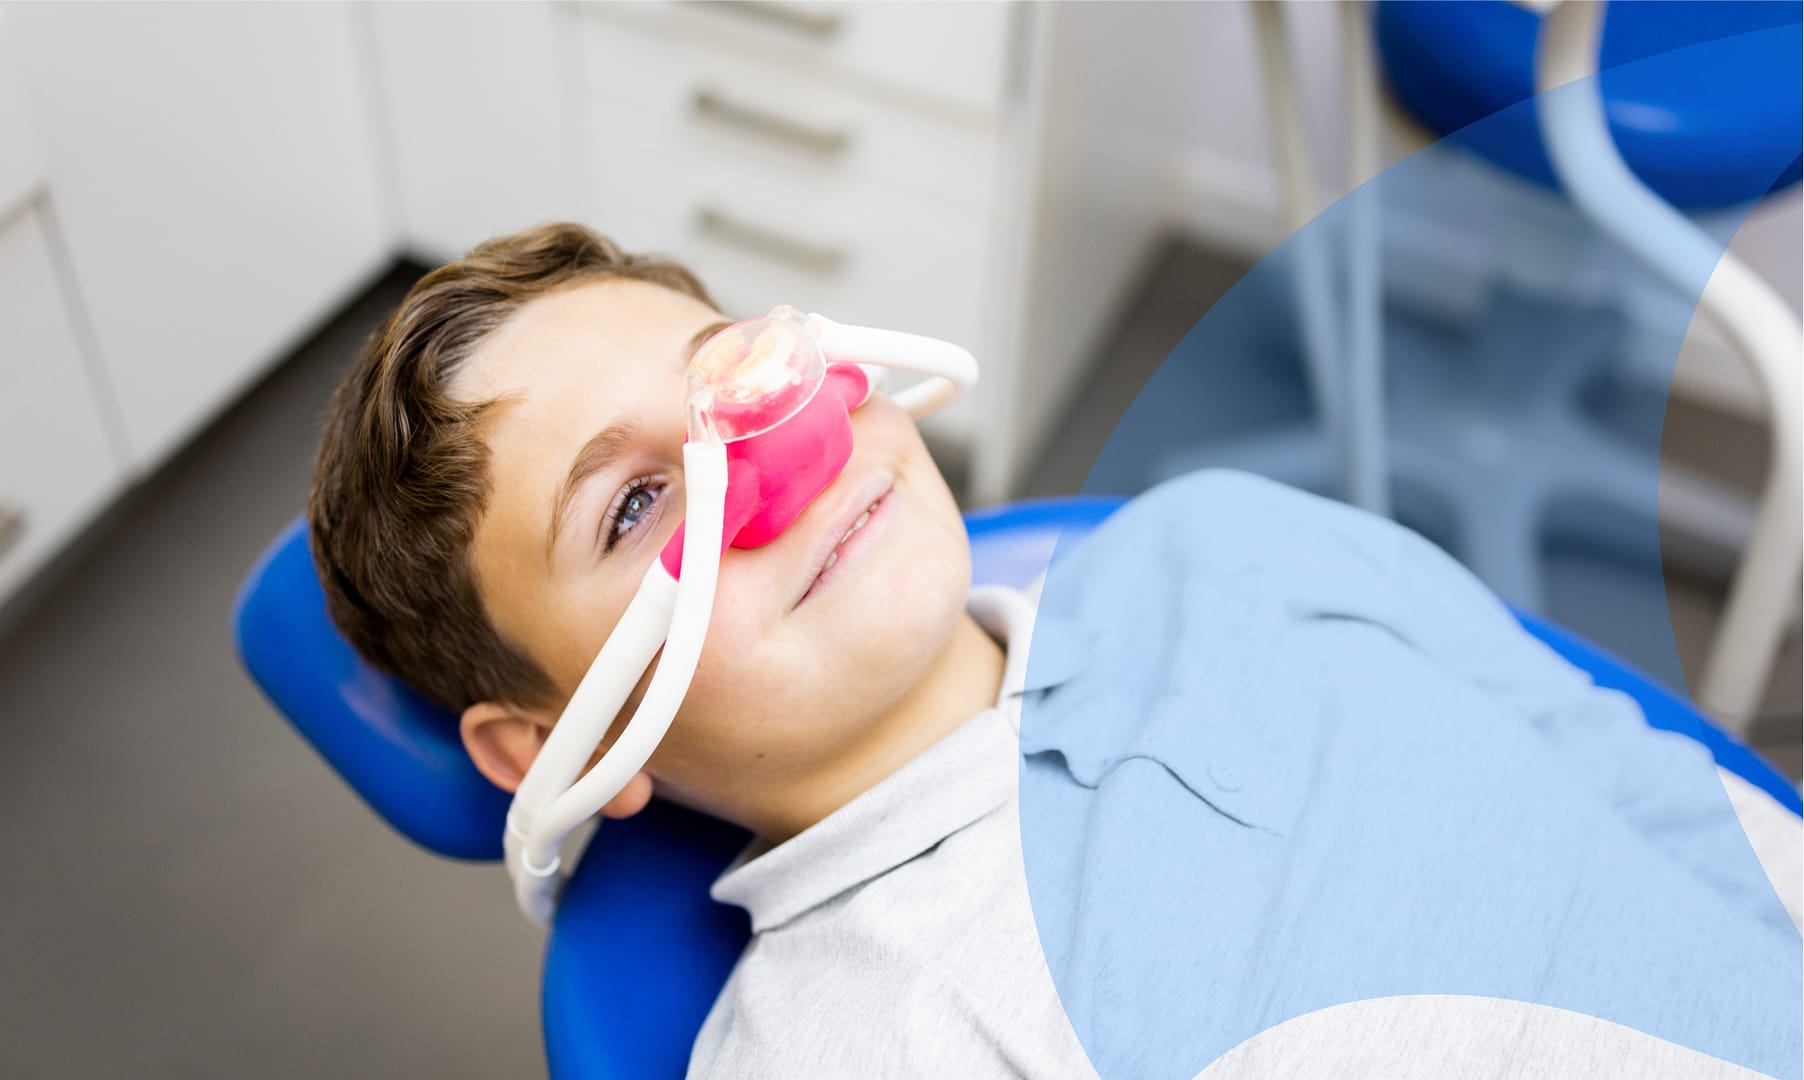 Dental sedation could make your child's visit easier.